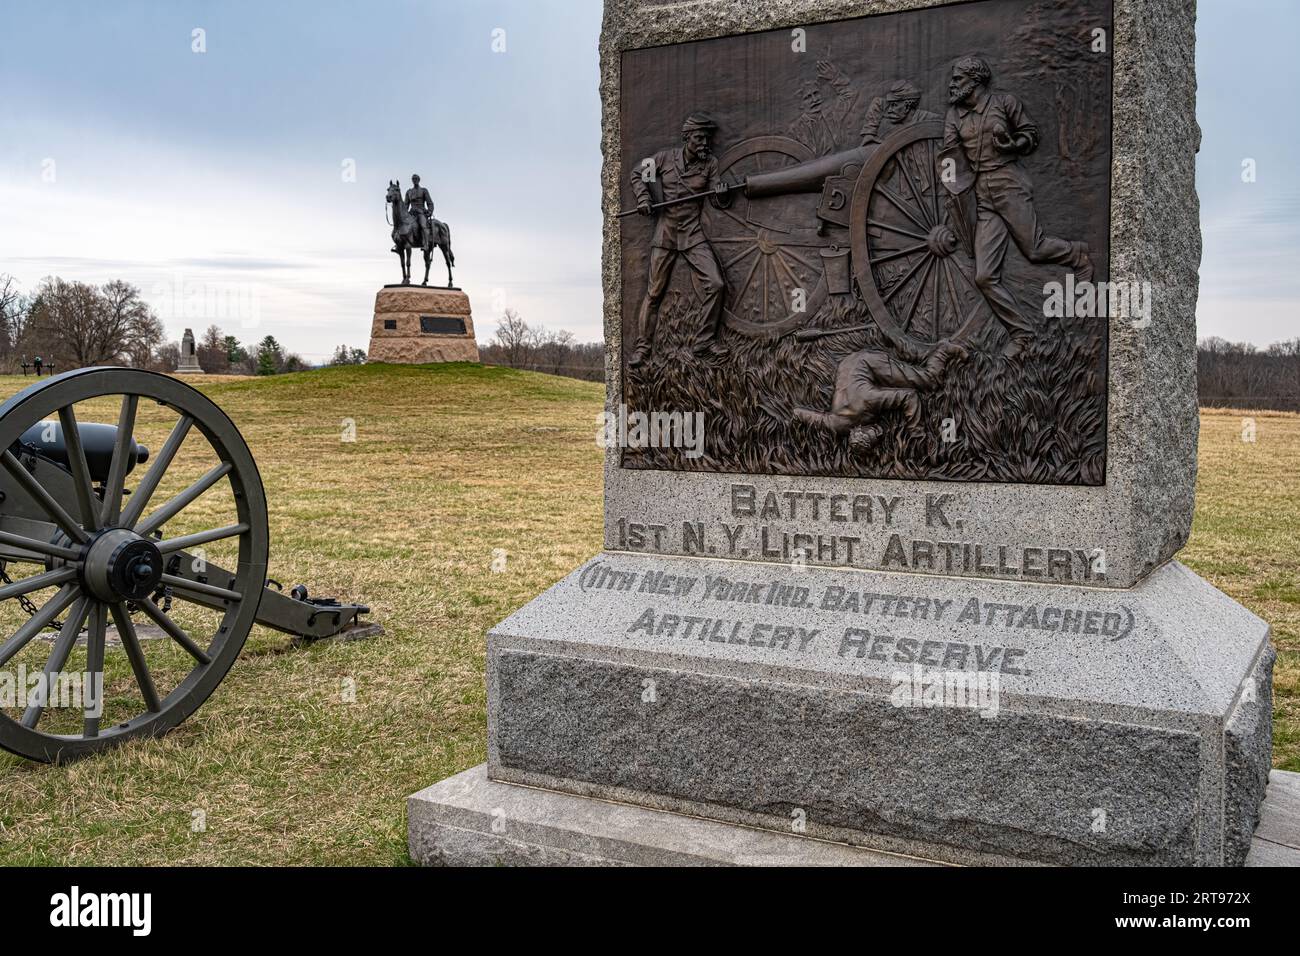 Mémorial à la batterie K de New York sur le champ de bataille au parc militaire national de Gettysburg à Gettysburg, Pennsylvanie. (ÉTATS-UNIS) Banque D'Images